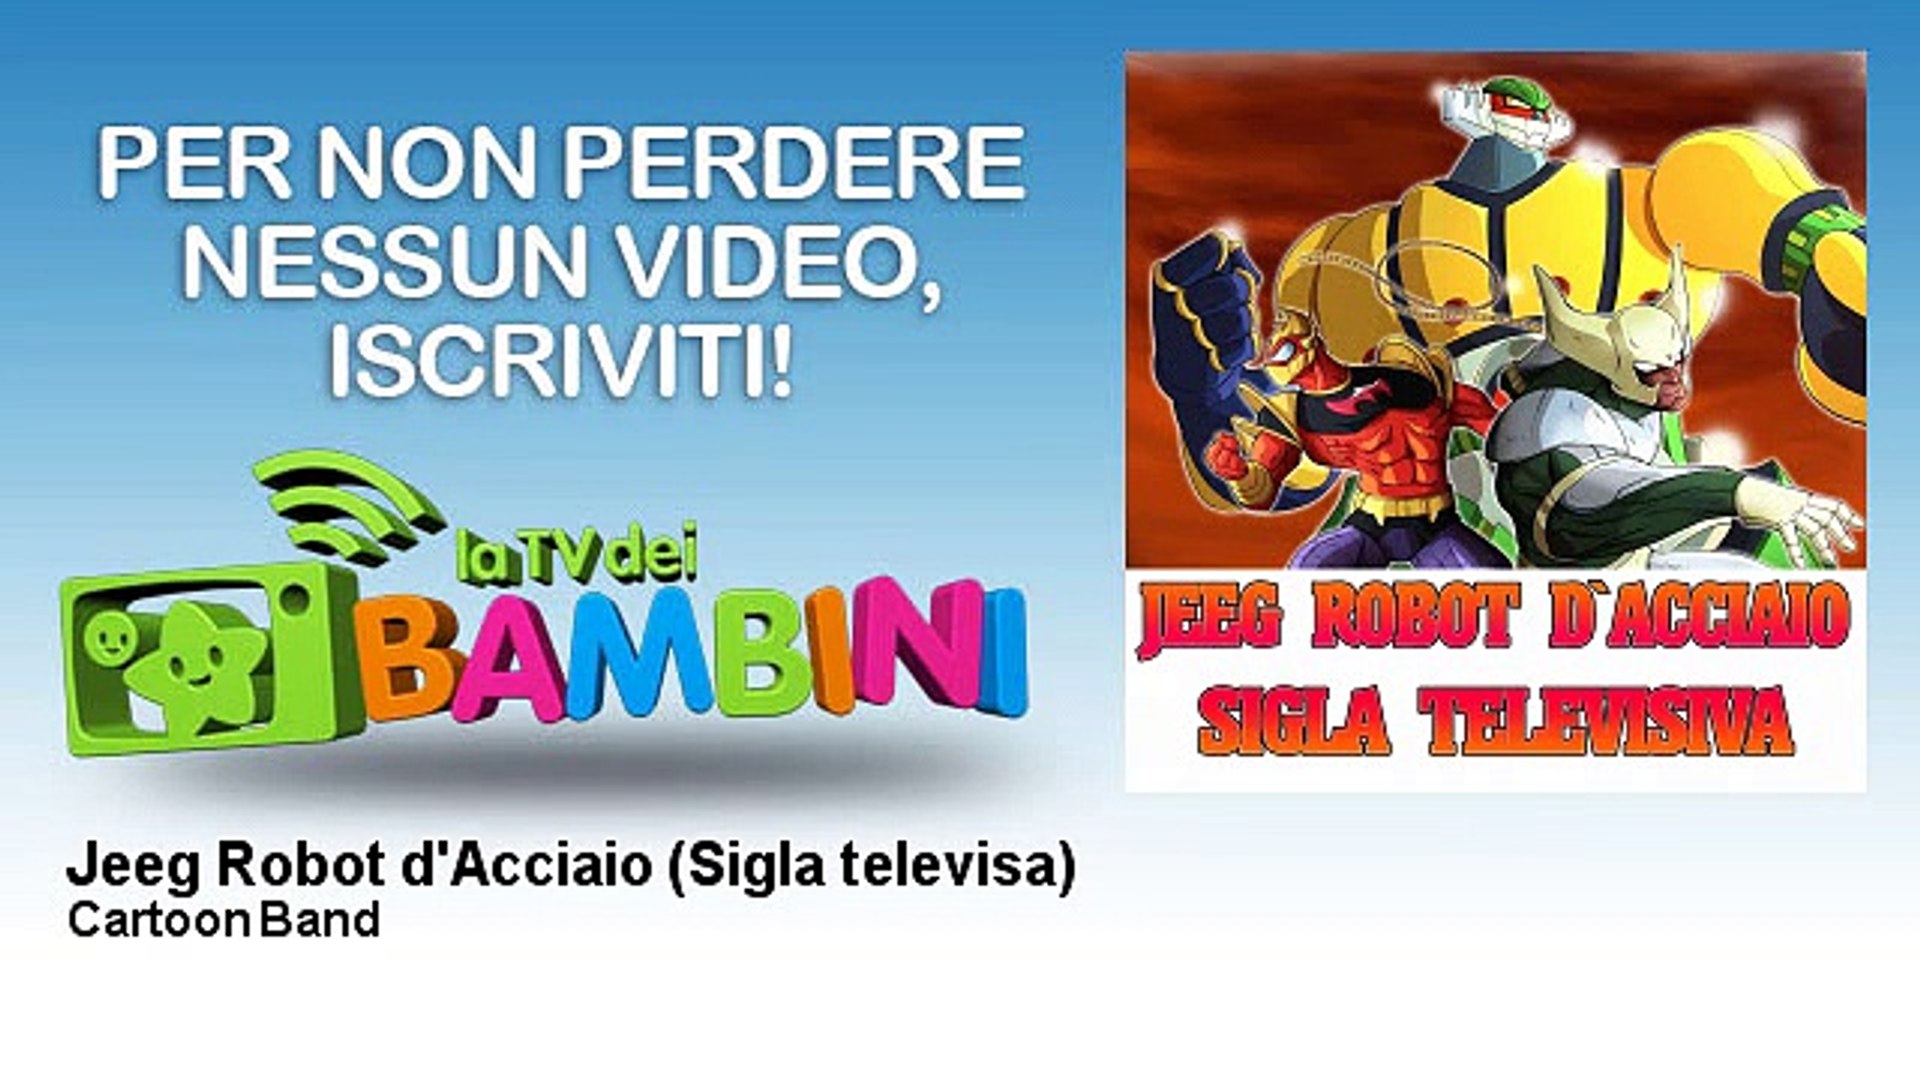 Cartoon Band - Jeeg Robot d'Acciaio - Sigla televisa - Vidéo Dailymotion